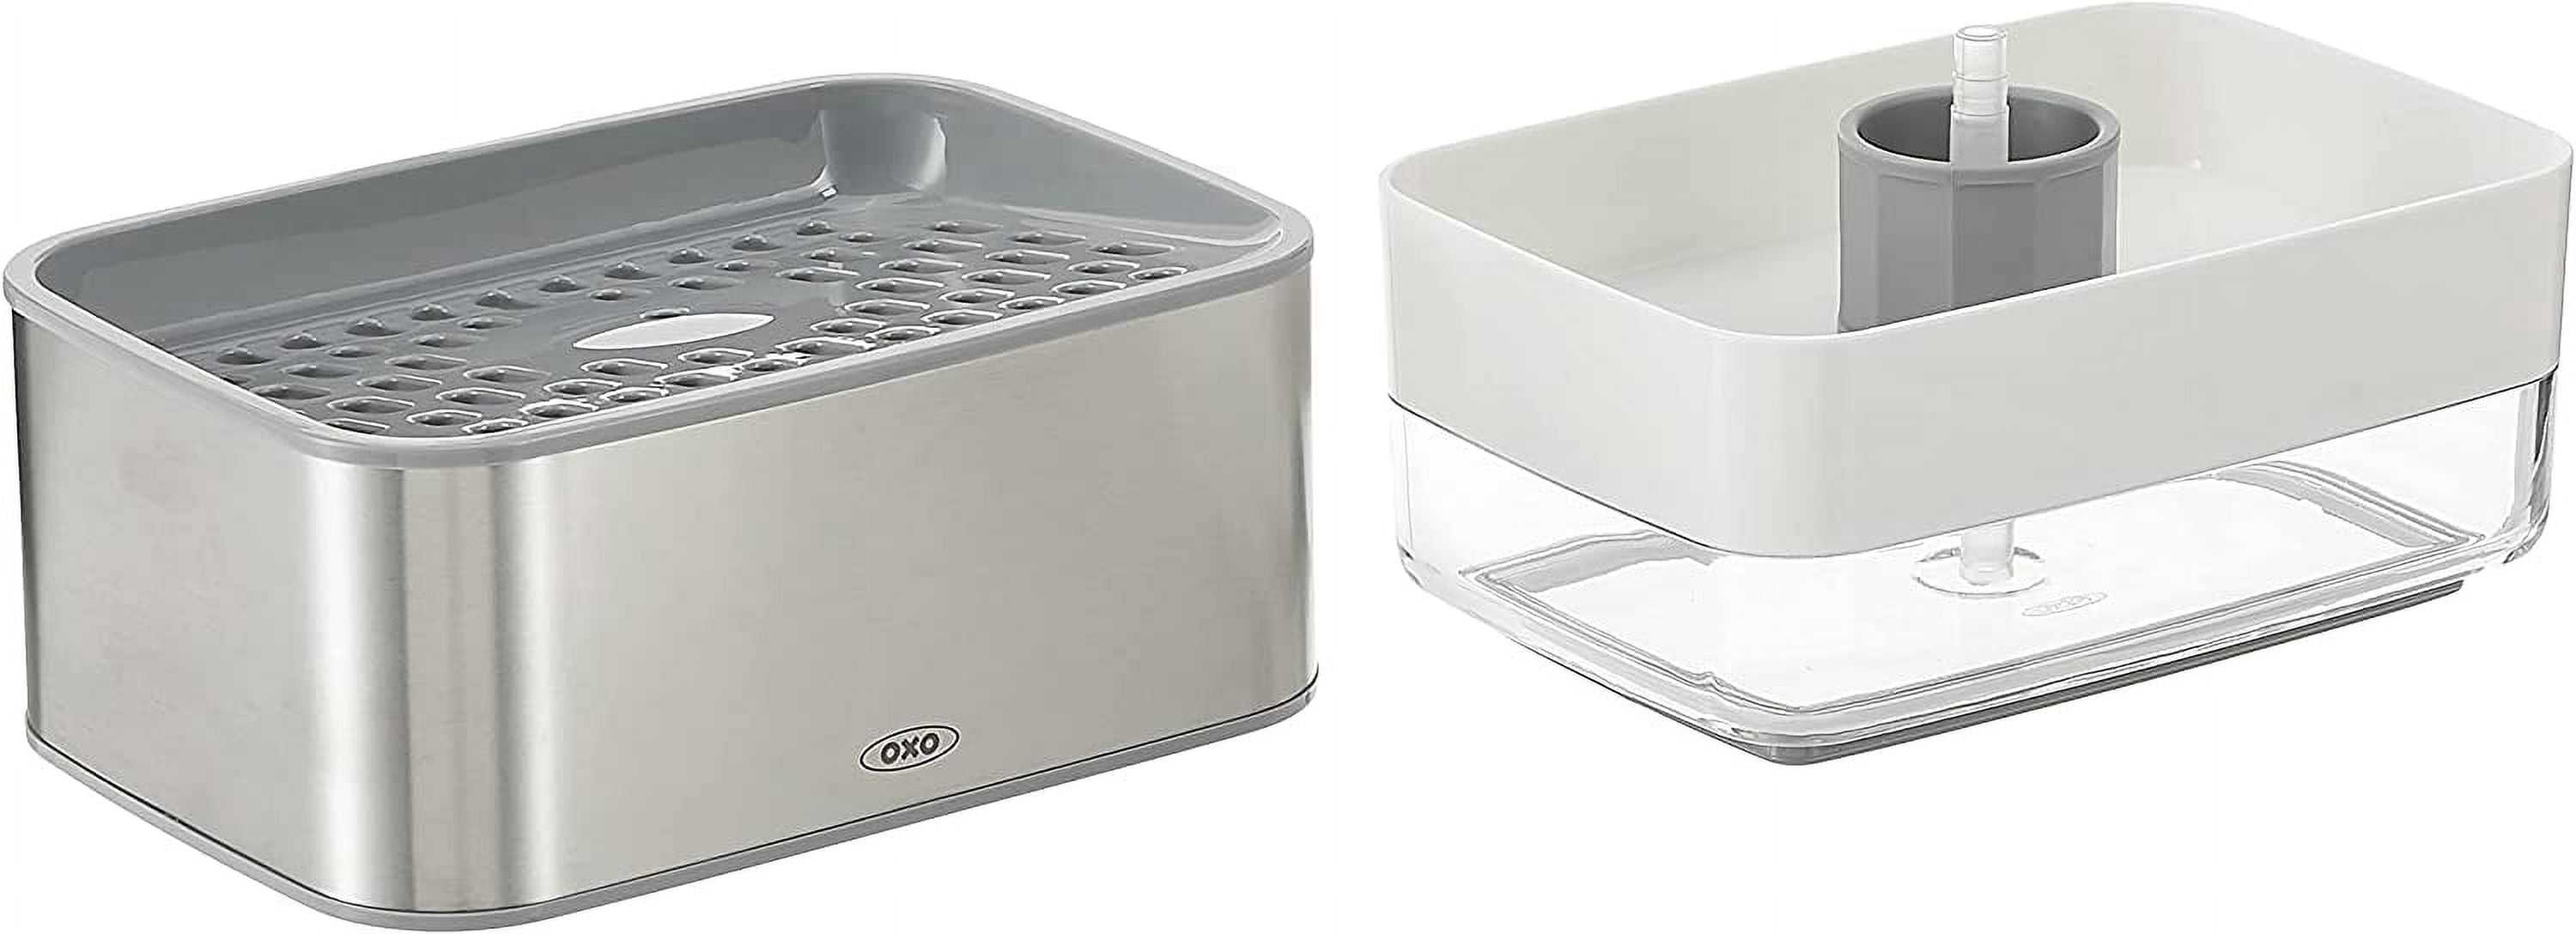  OVVE HOME Soap Dispenser and Sponge Holder Compatible